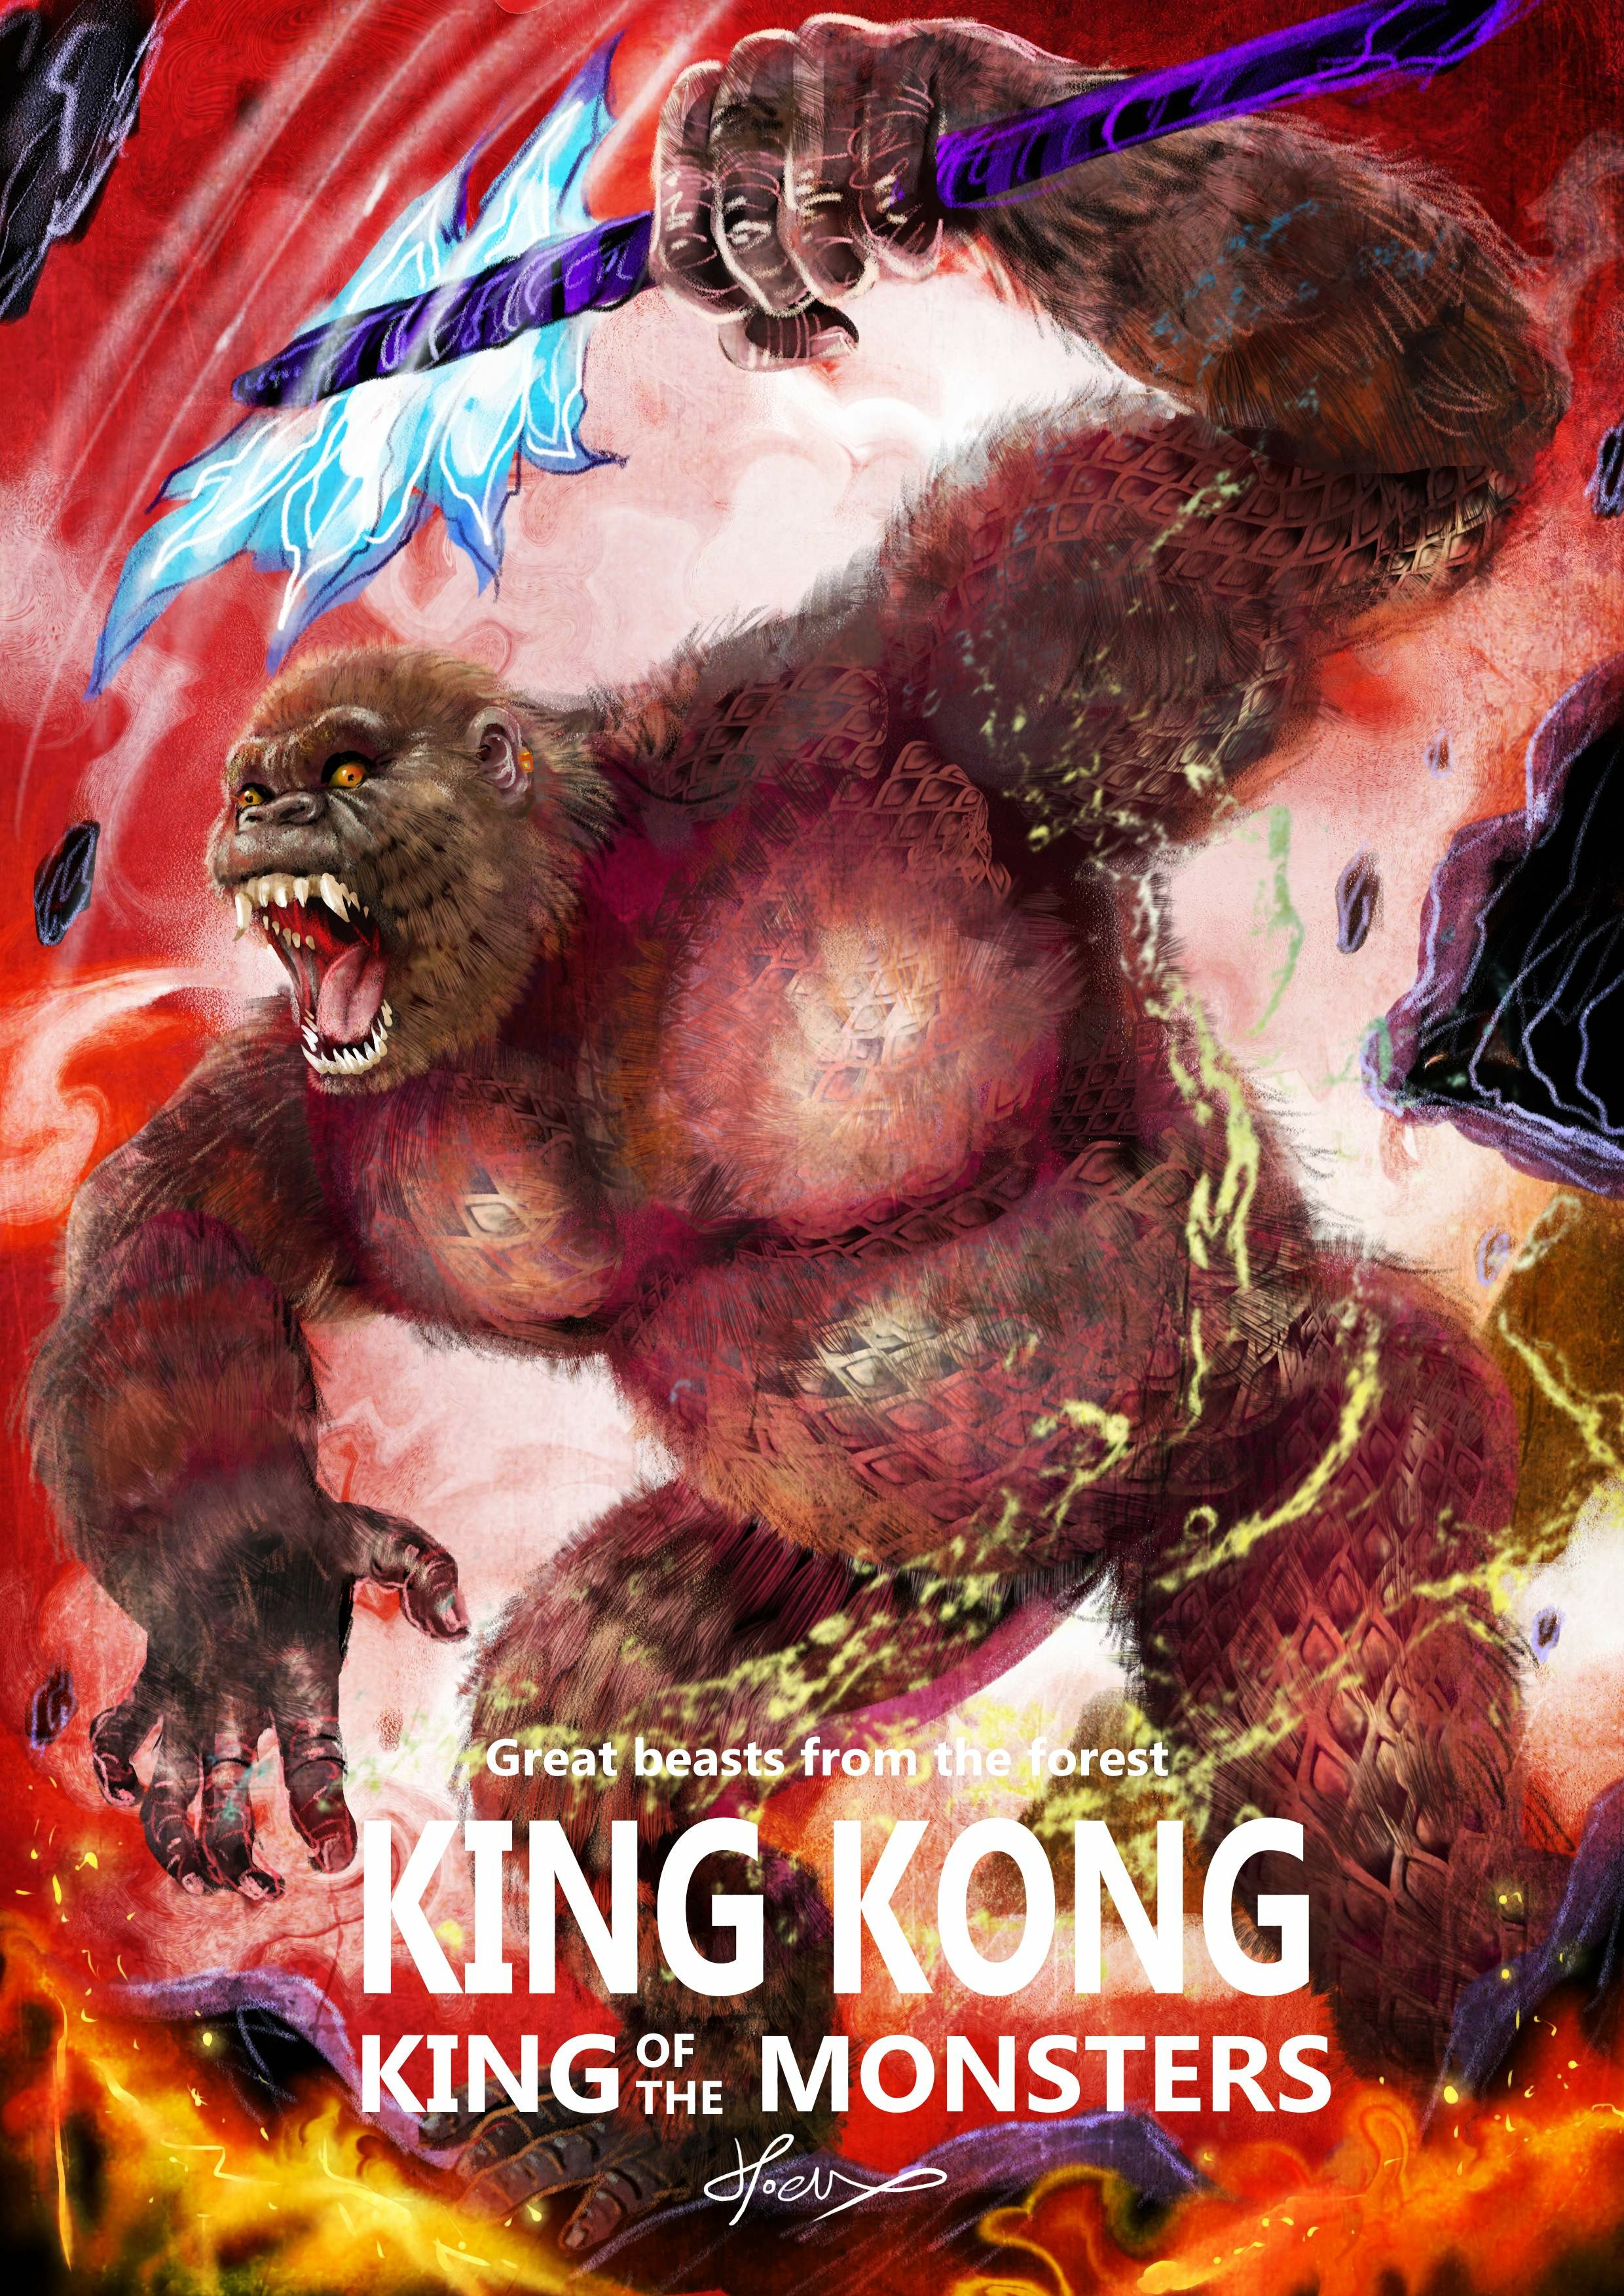 神奇守護幻獸-金剛 King Kong-hoelex.jpg